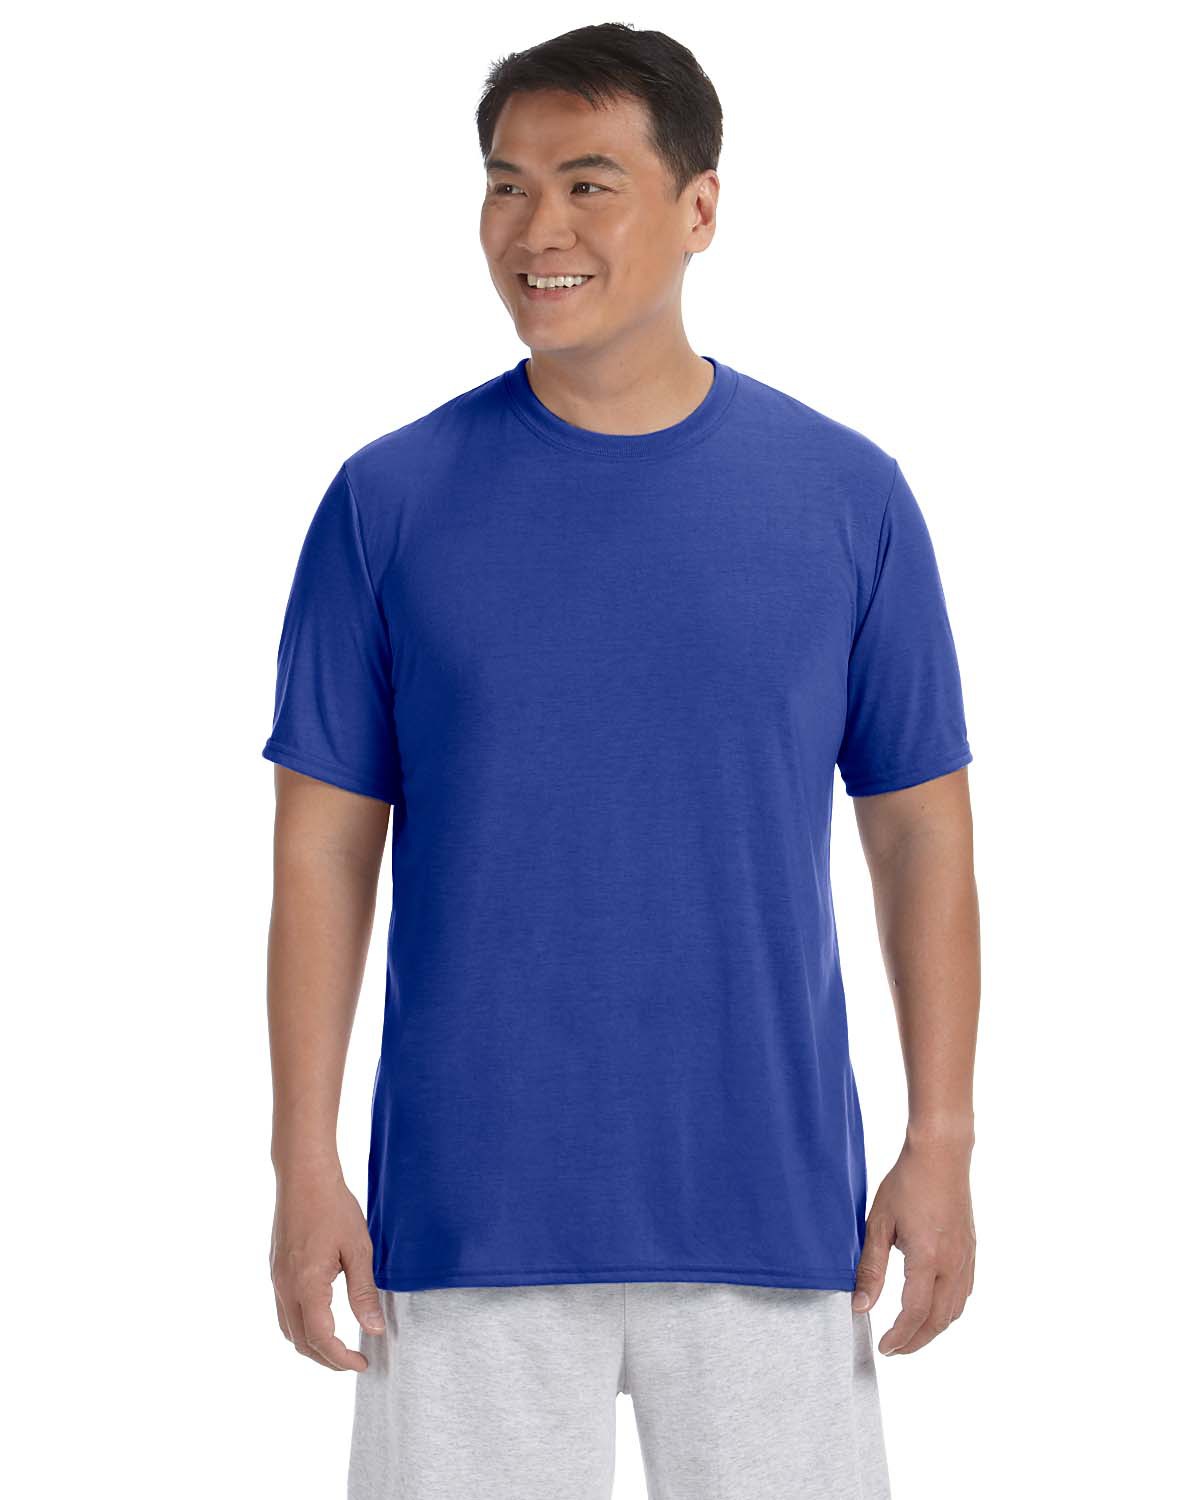 Wholesale Gildan Adult Sublimation T-Shirt Plain sublimation t-shirts